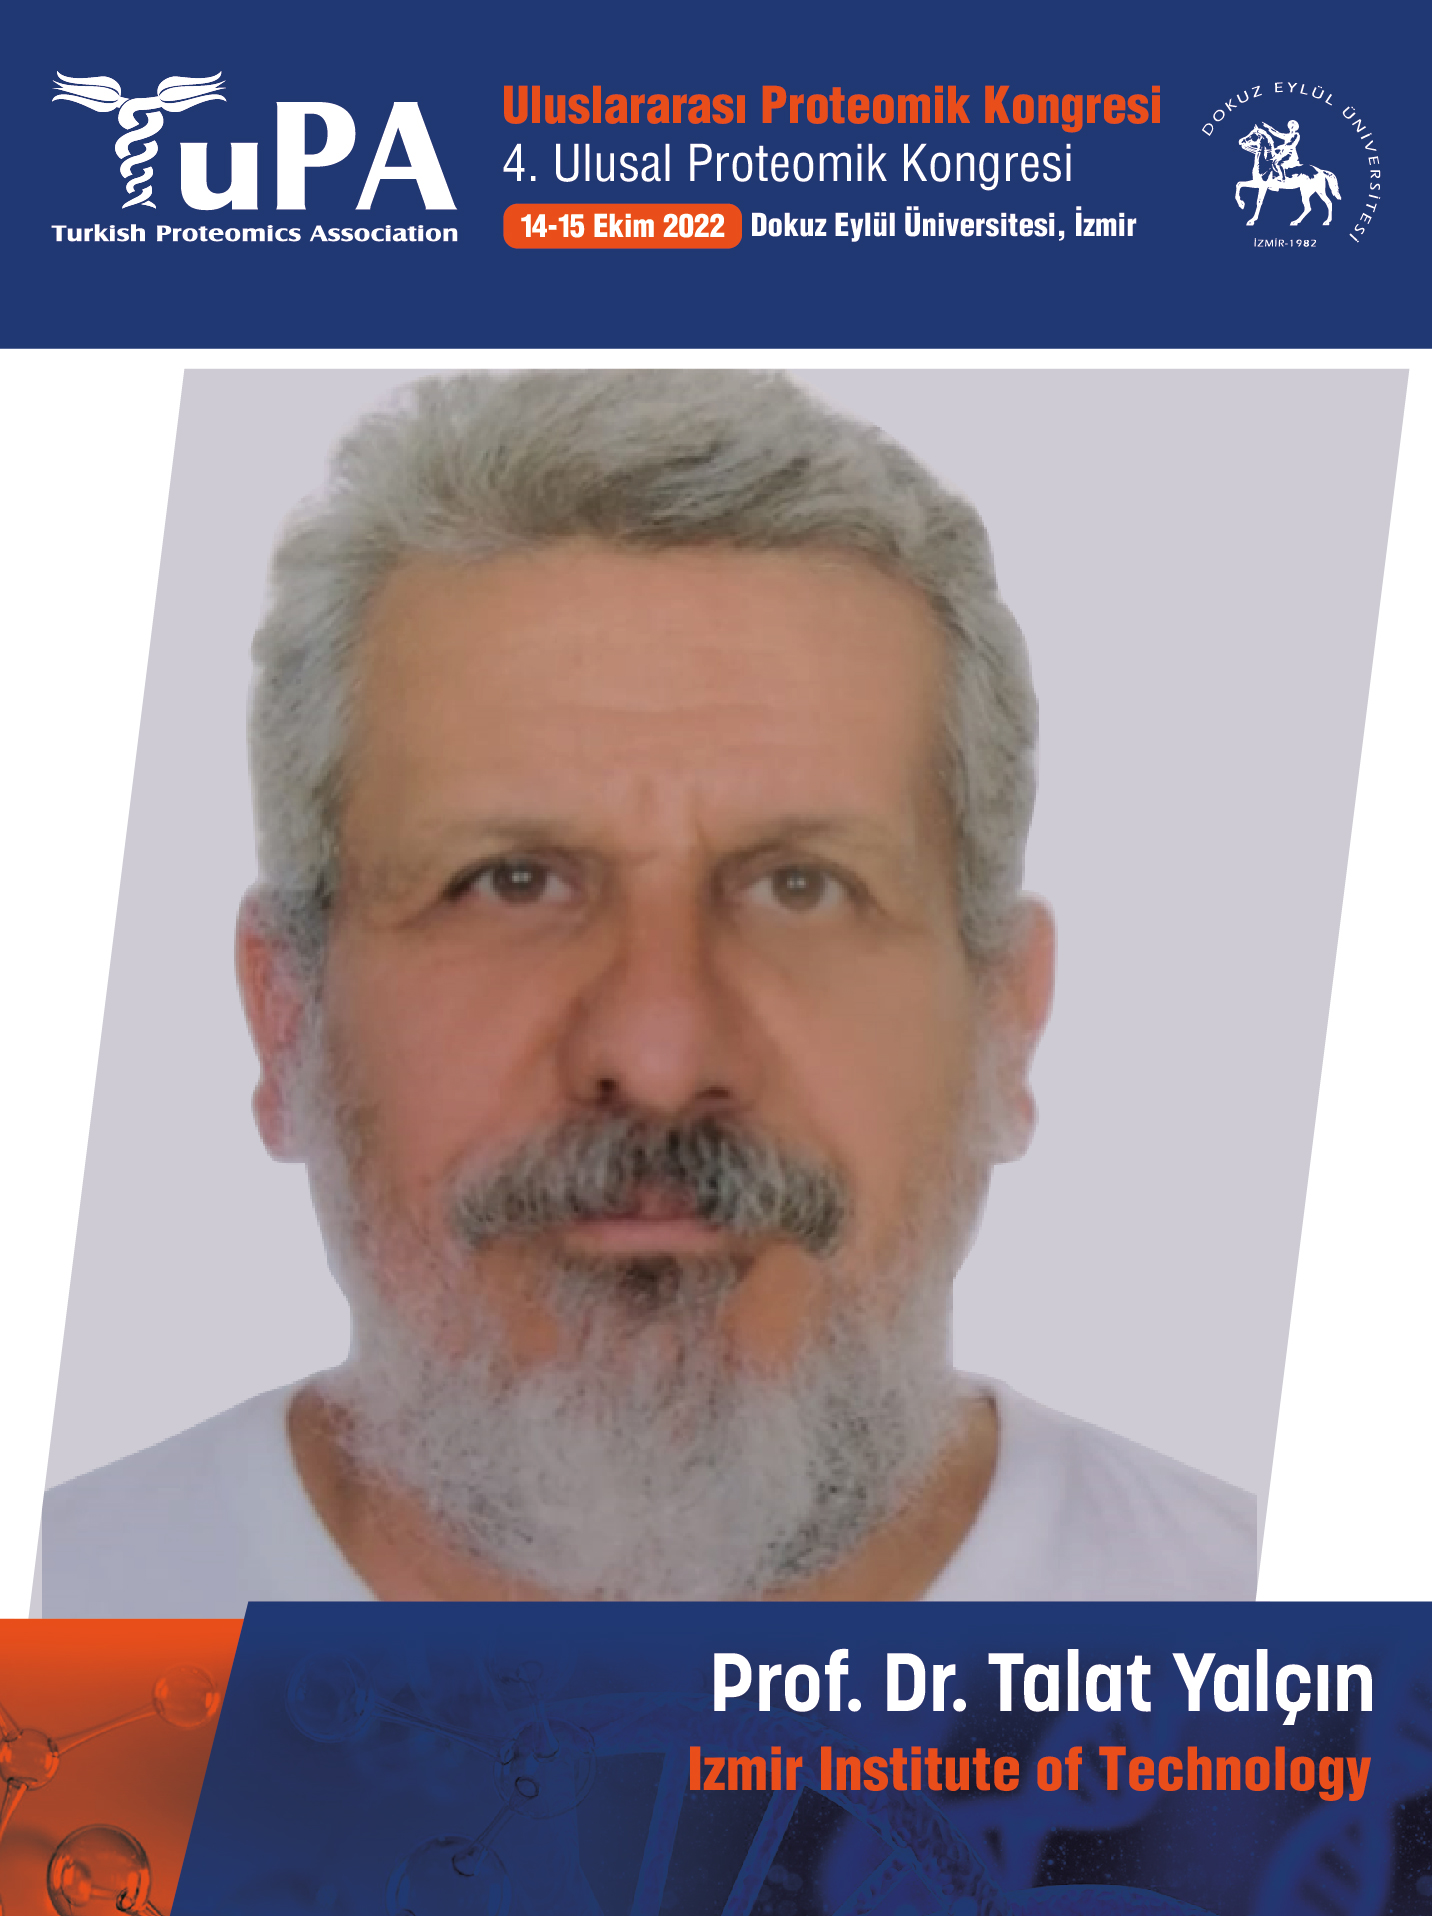 Prof. Dr. Talat Yalçın